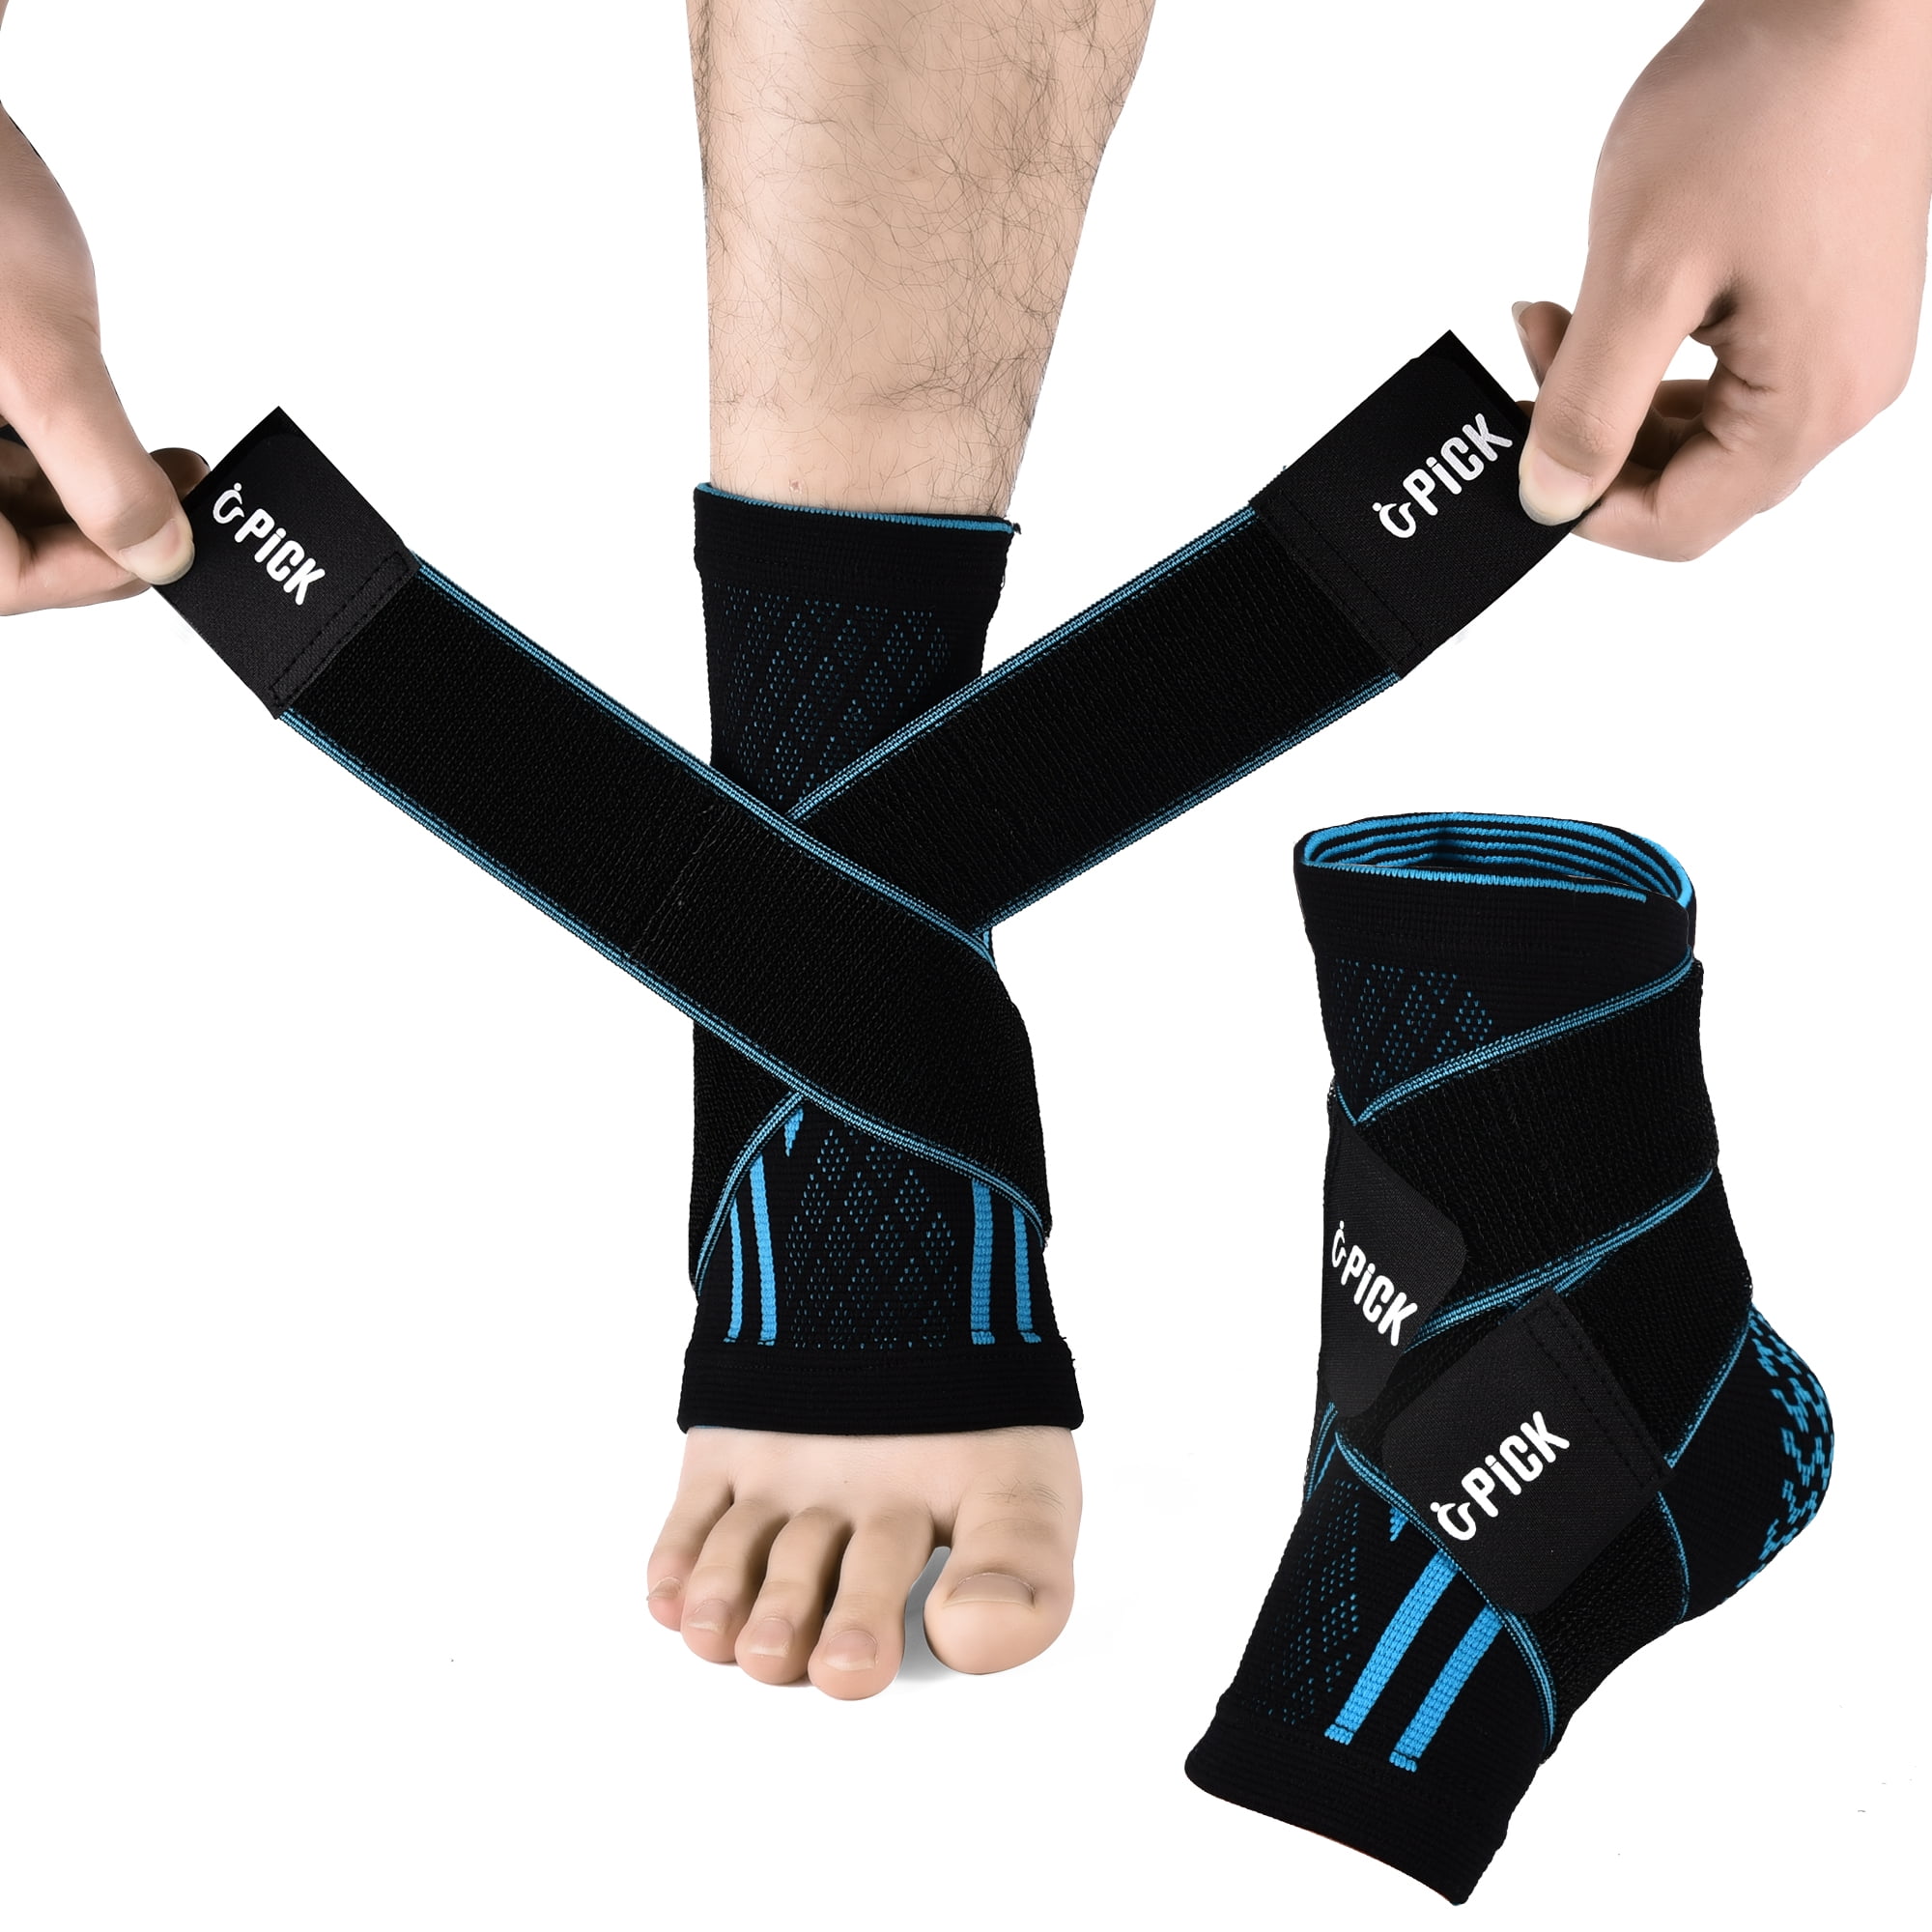 Achilles tendon & Ankle Brace Support, SZELAM Adjustable Compression ...